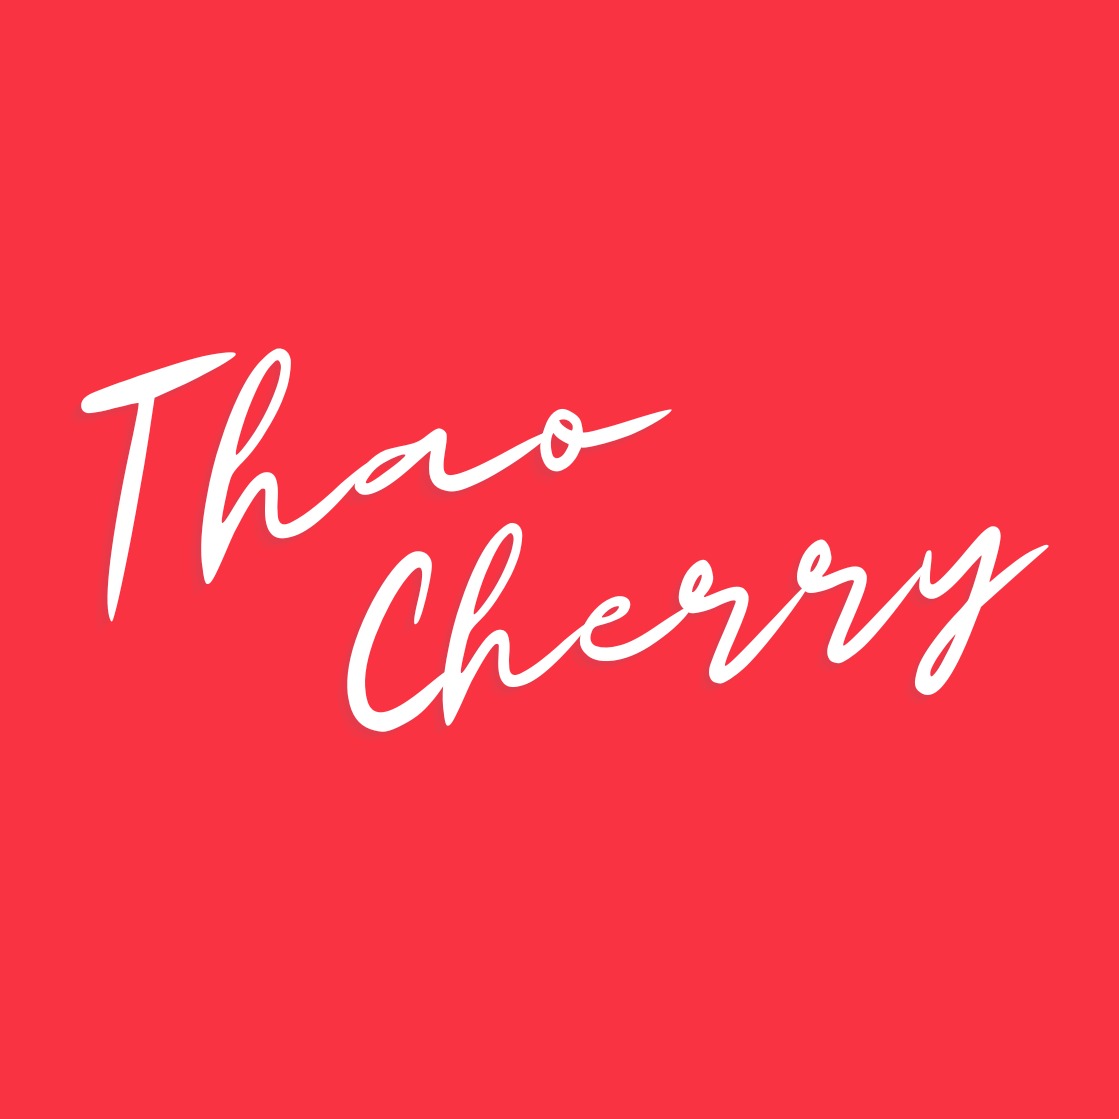 THAOCHERRY.VN